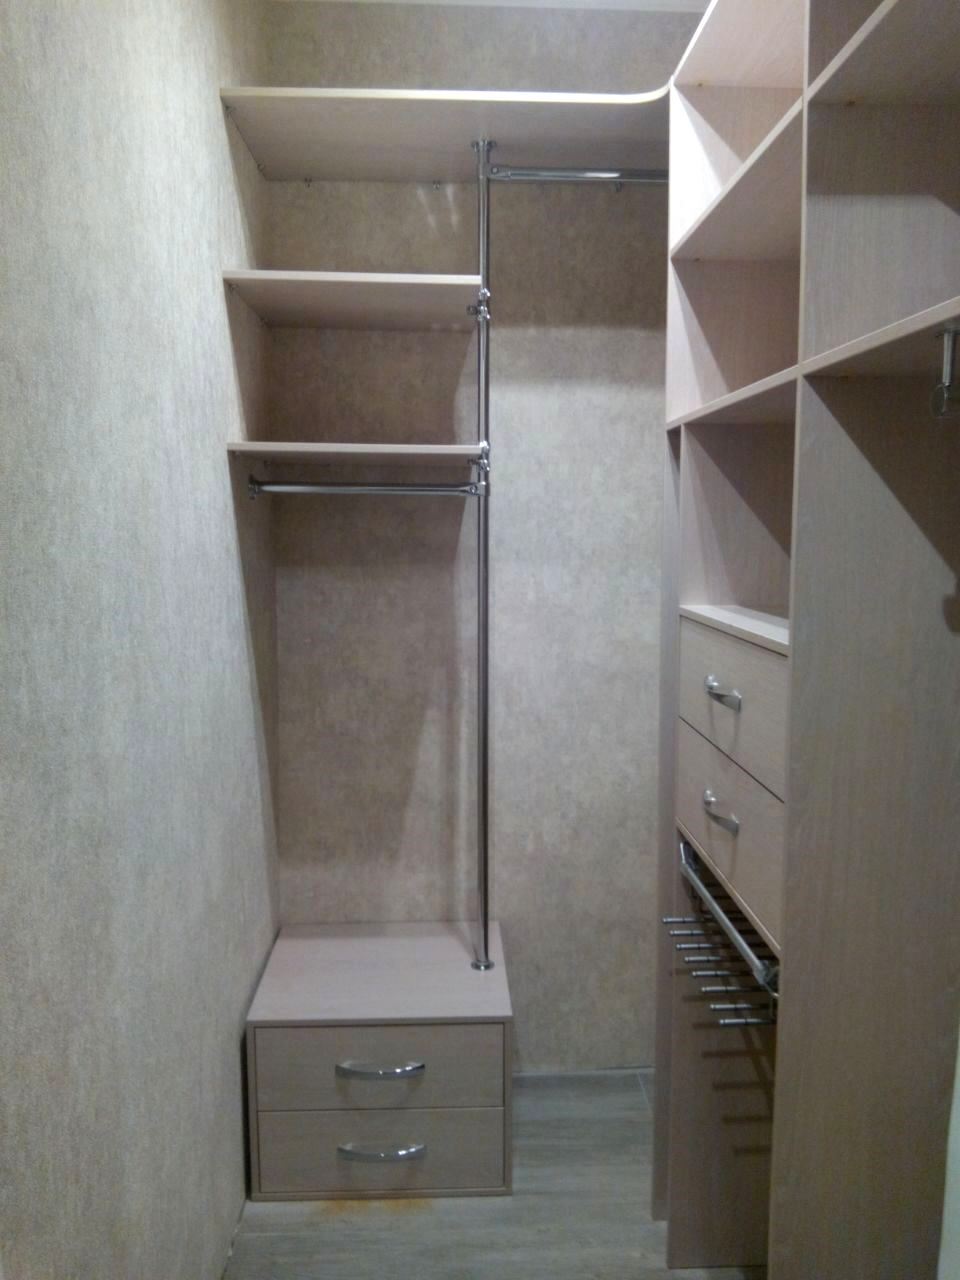 планировка гардеробной комнаты 1 2 на 2 метра